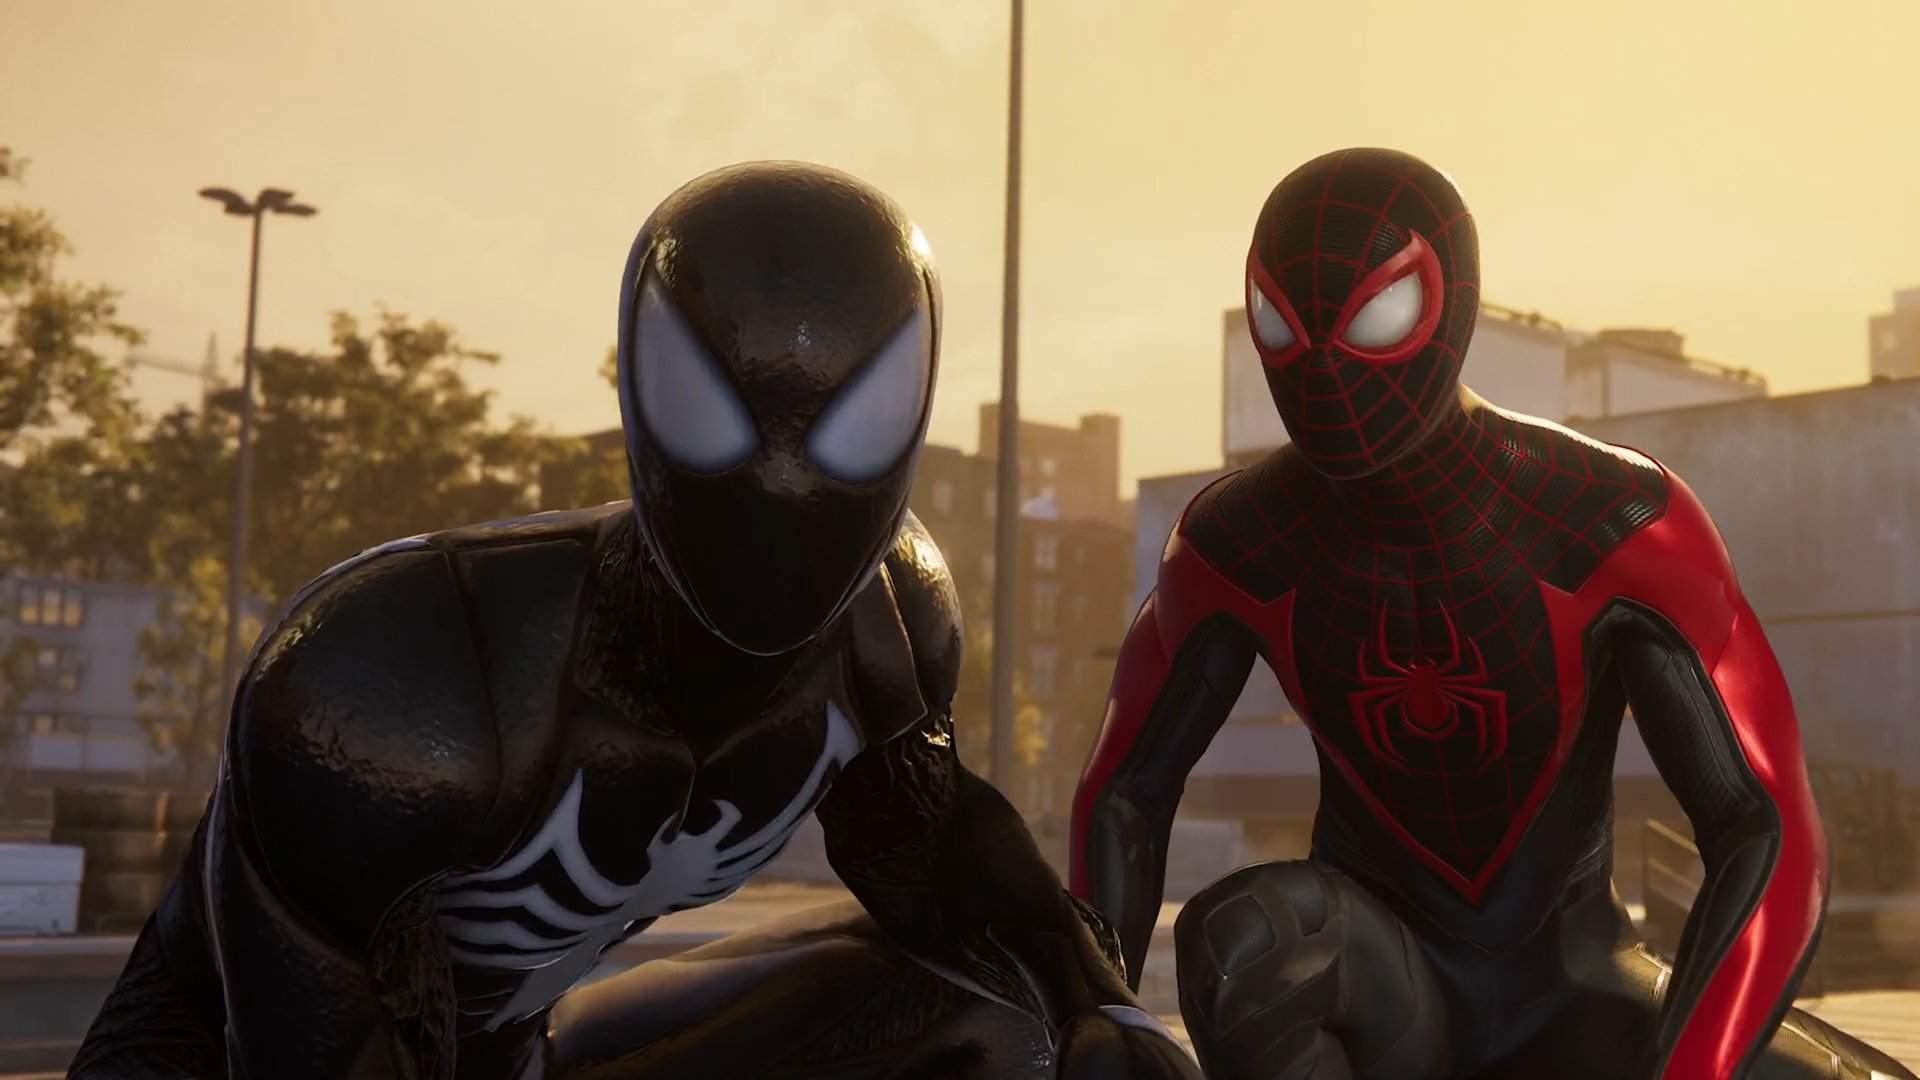 Spider-Man 2 muestra a Venom, Lagarto, Kraven y el traje de